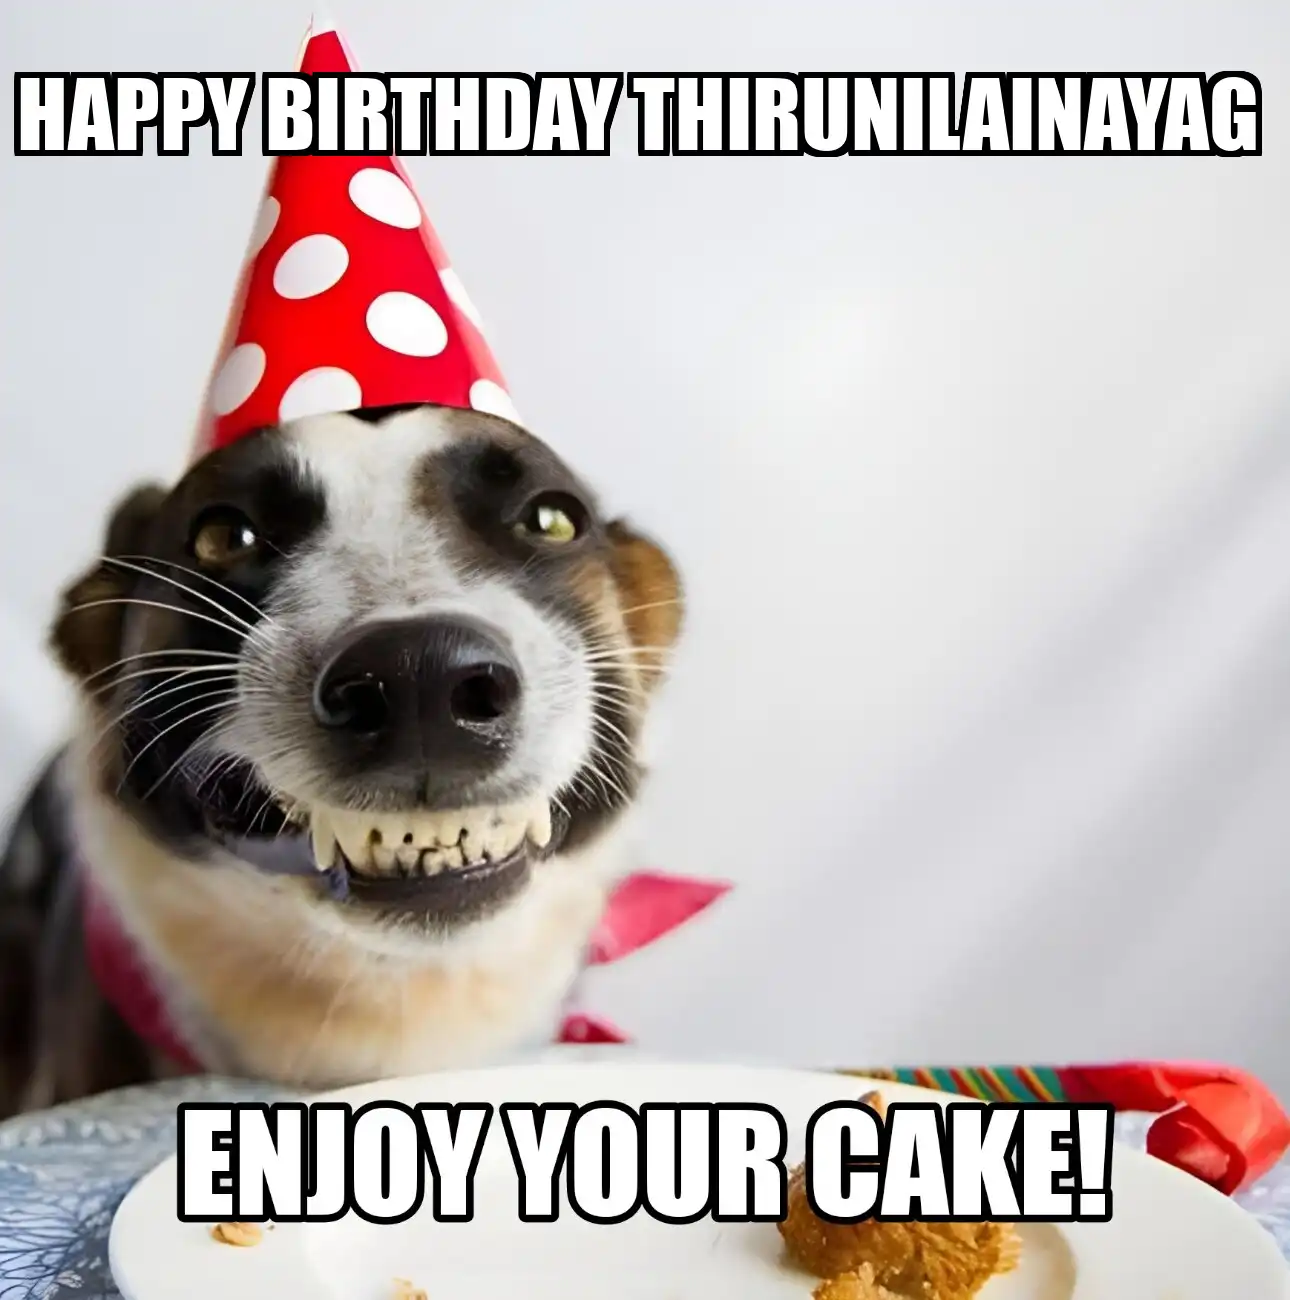 Happy Birthday Thirunilainayag Enjoy Your Cake Dog Meme